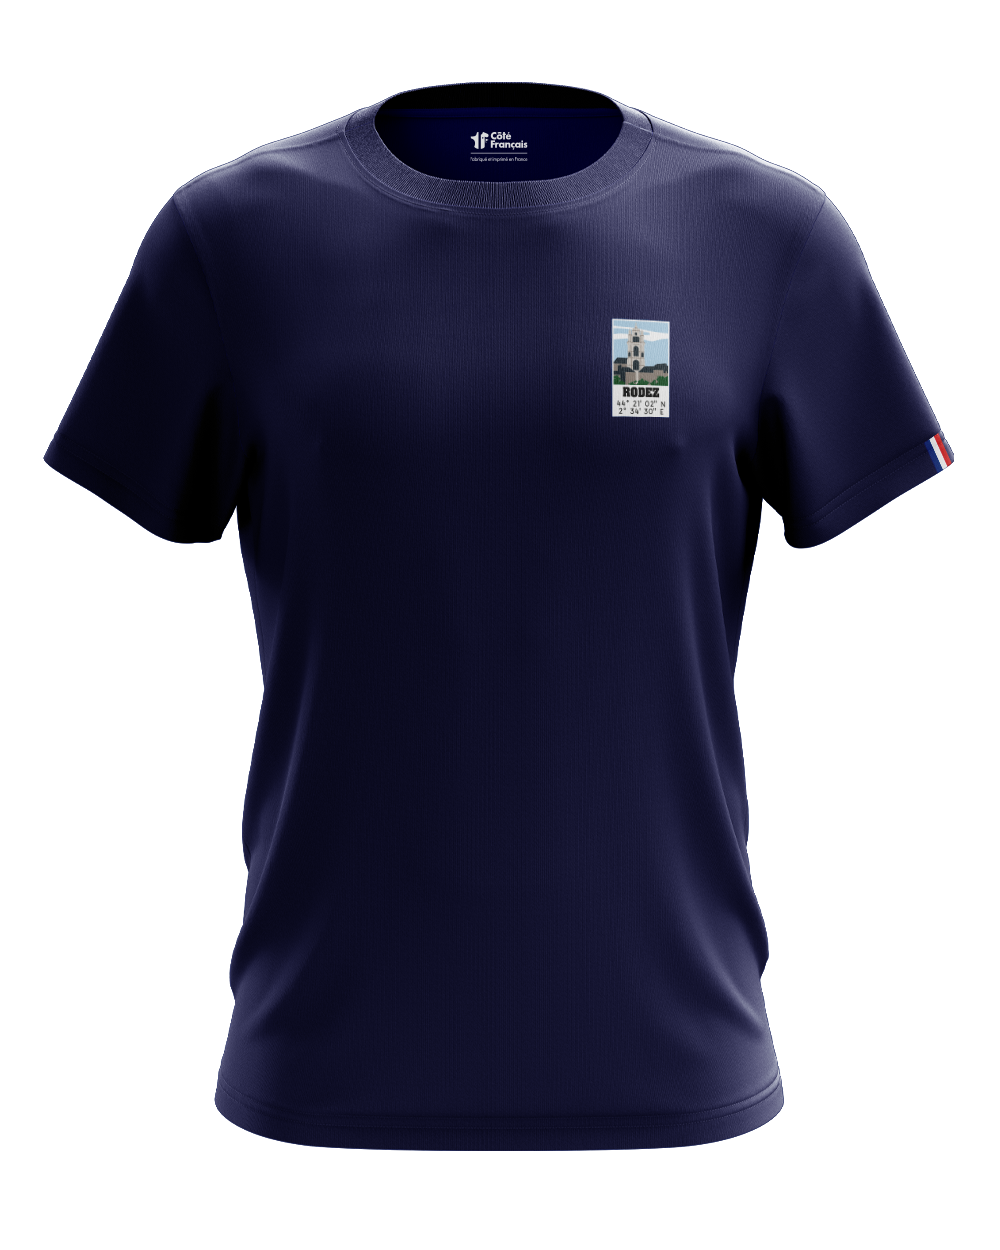 T-Shirt "Ville de Rodez" - bleu marine